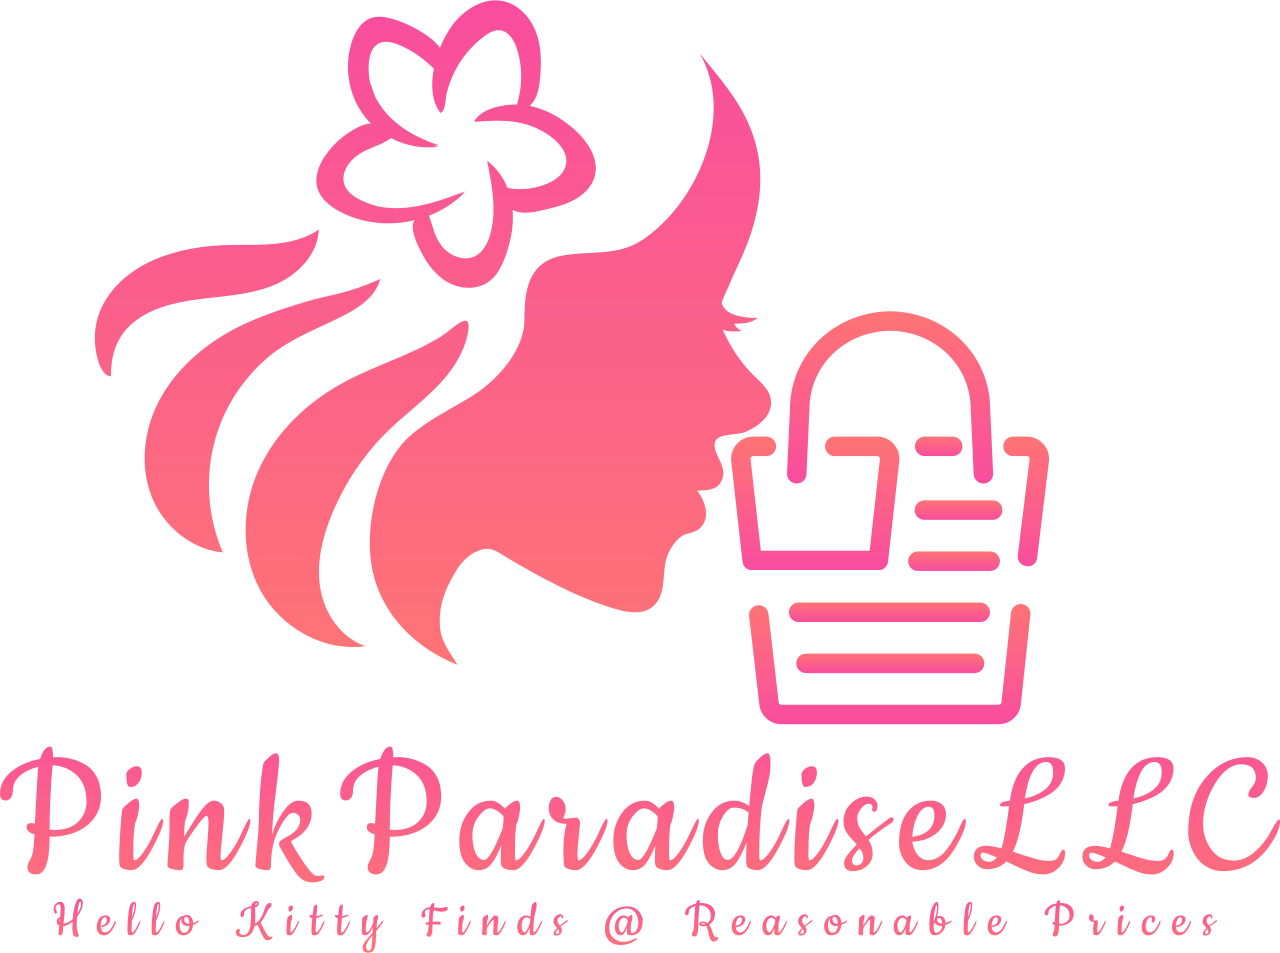 PinkParadiseHelloKittyLLC 's logo